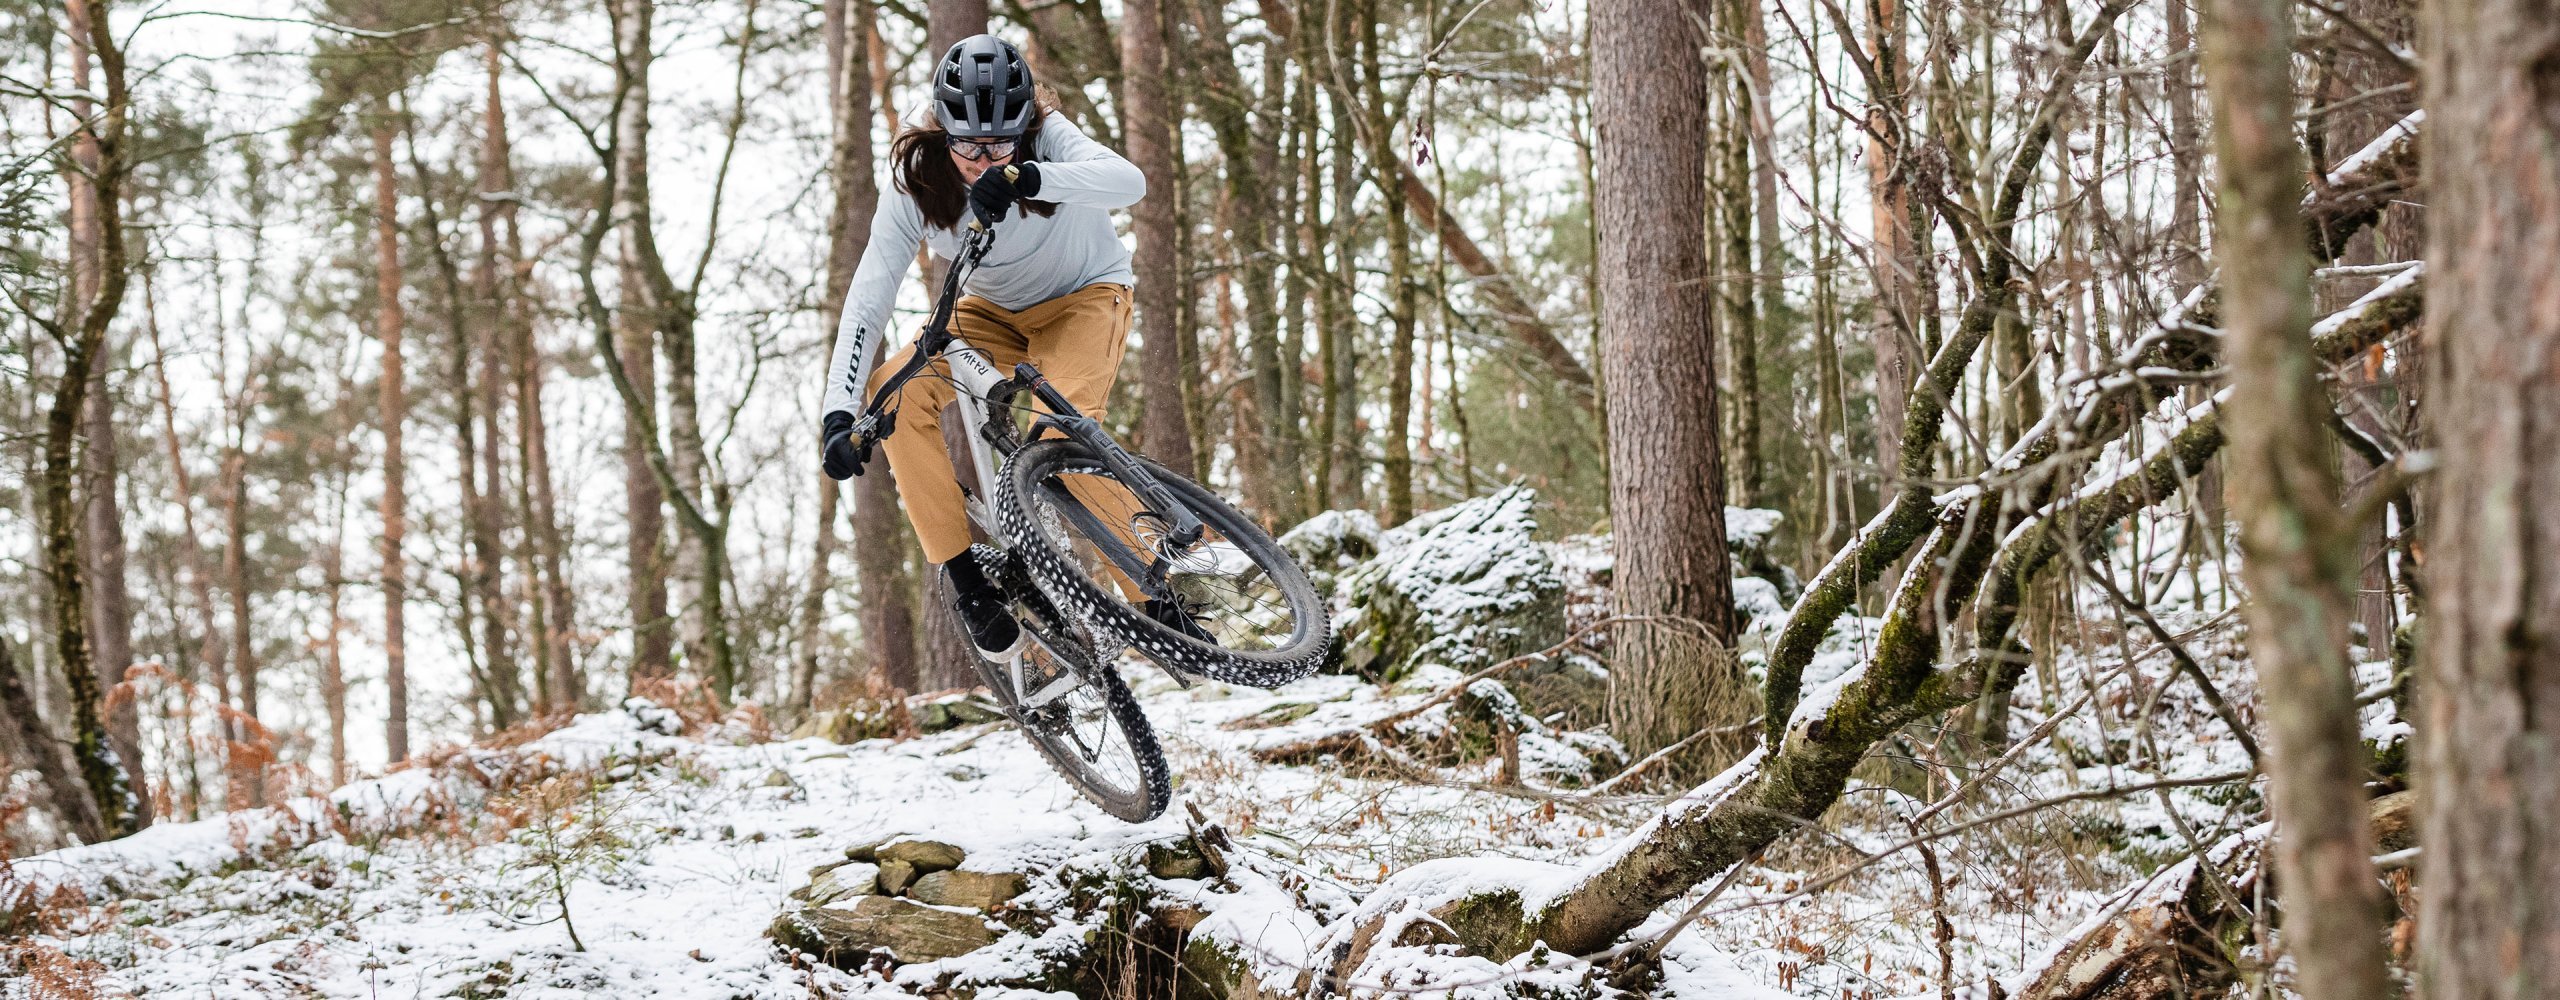 Mountainbiker fährt Trail im Wald in Winterbekleidung